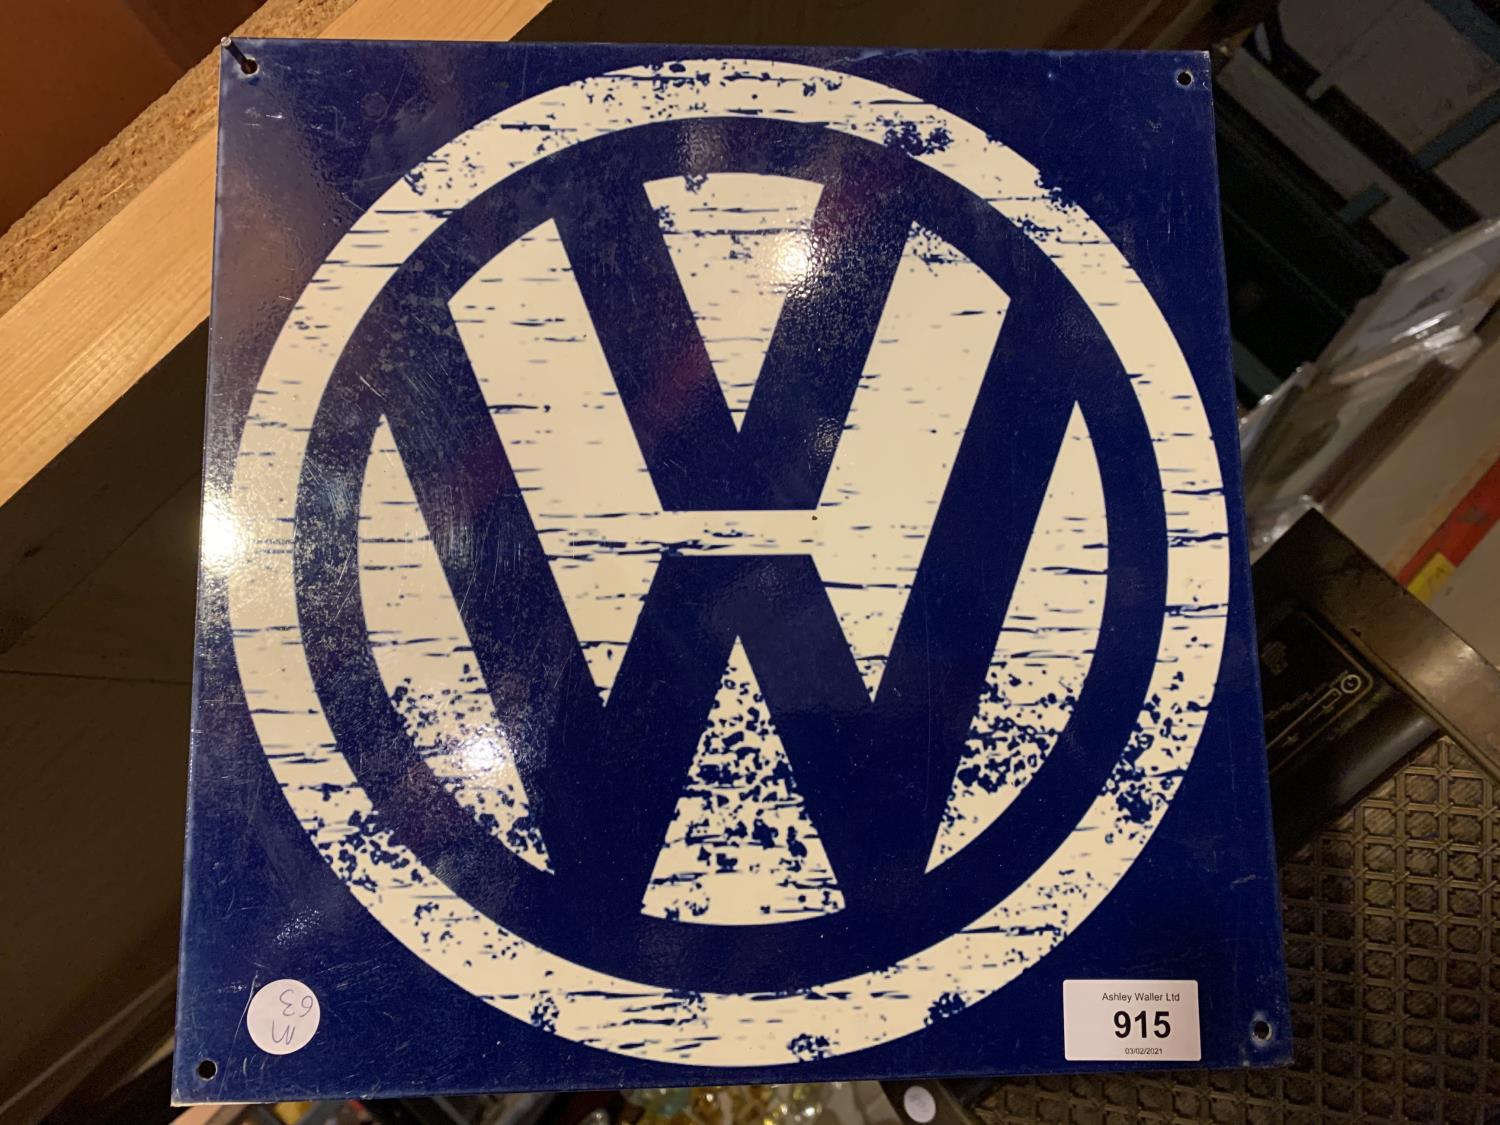 A VW METAL SIGN